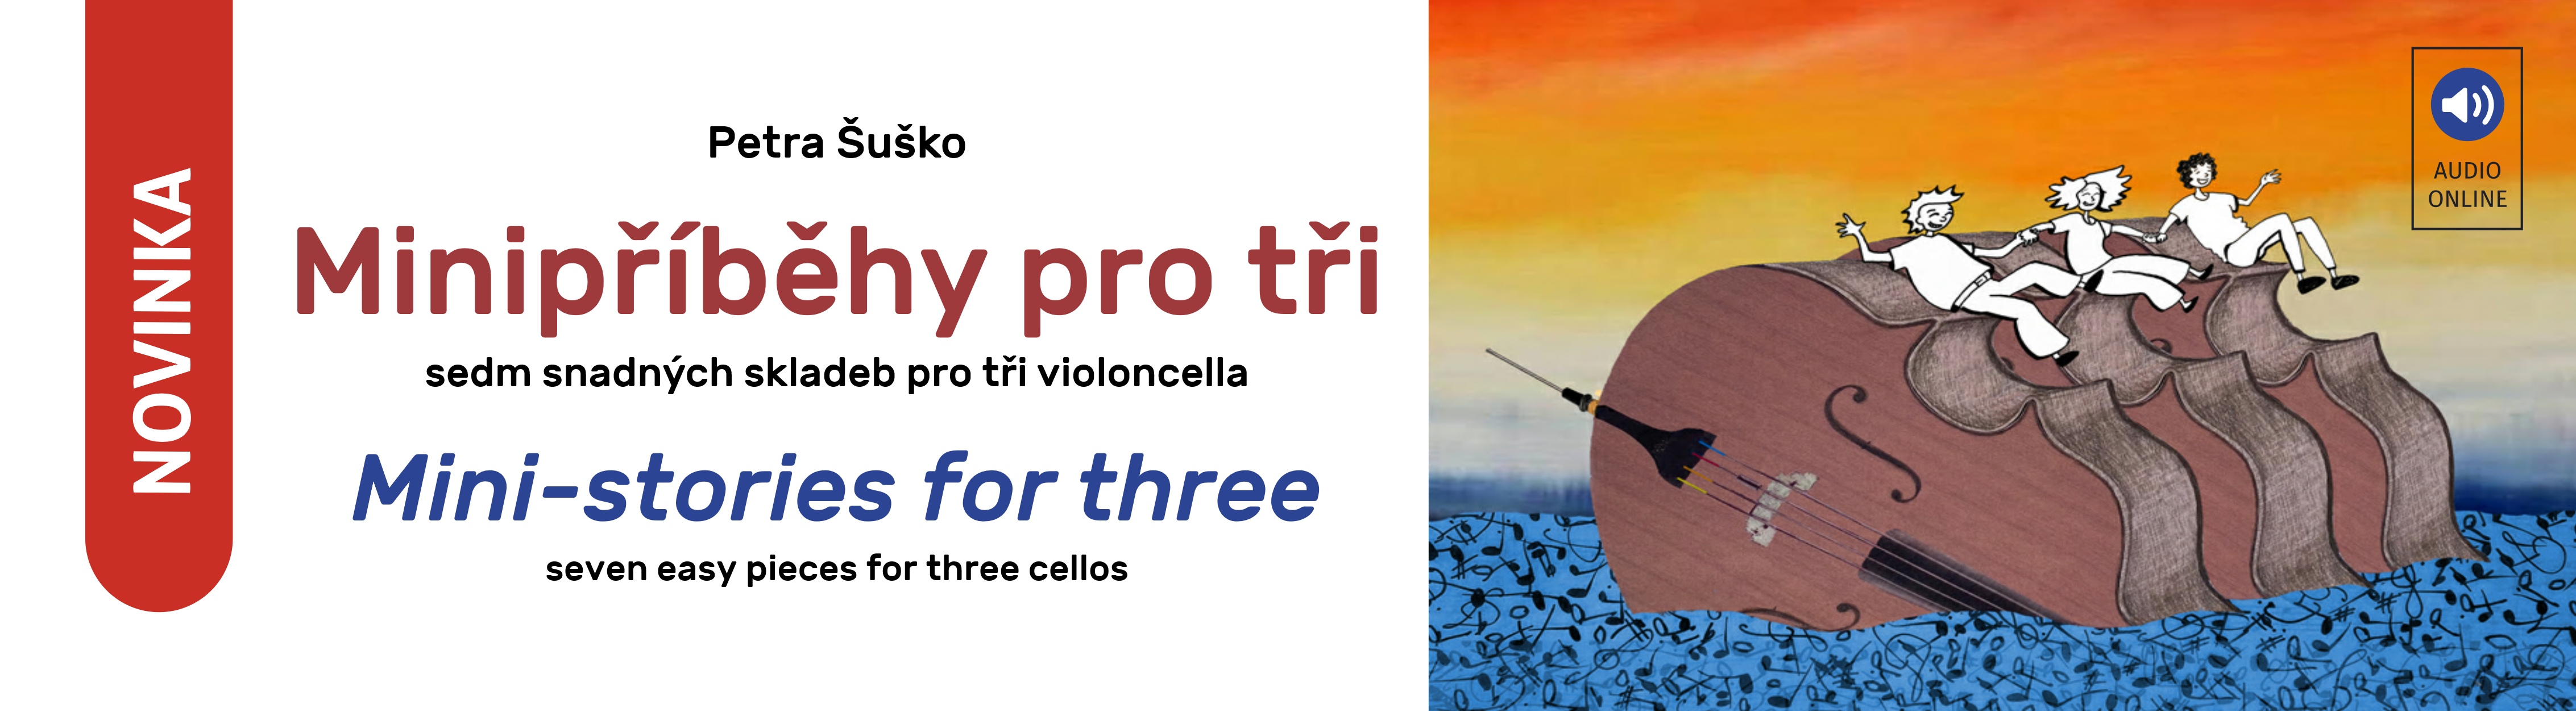 Minipříběhy pro tři violoncella